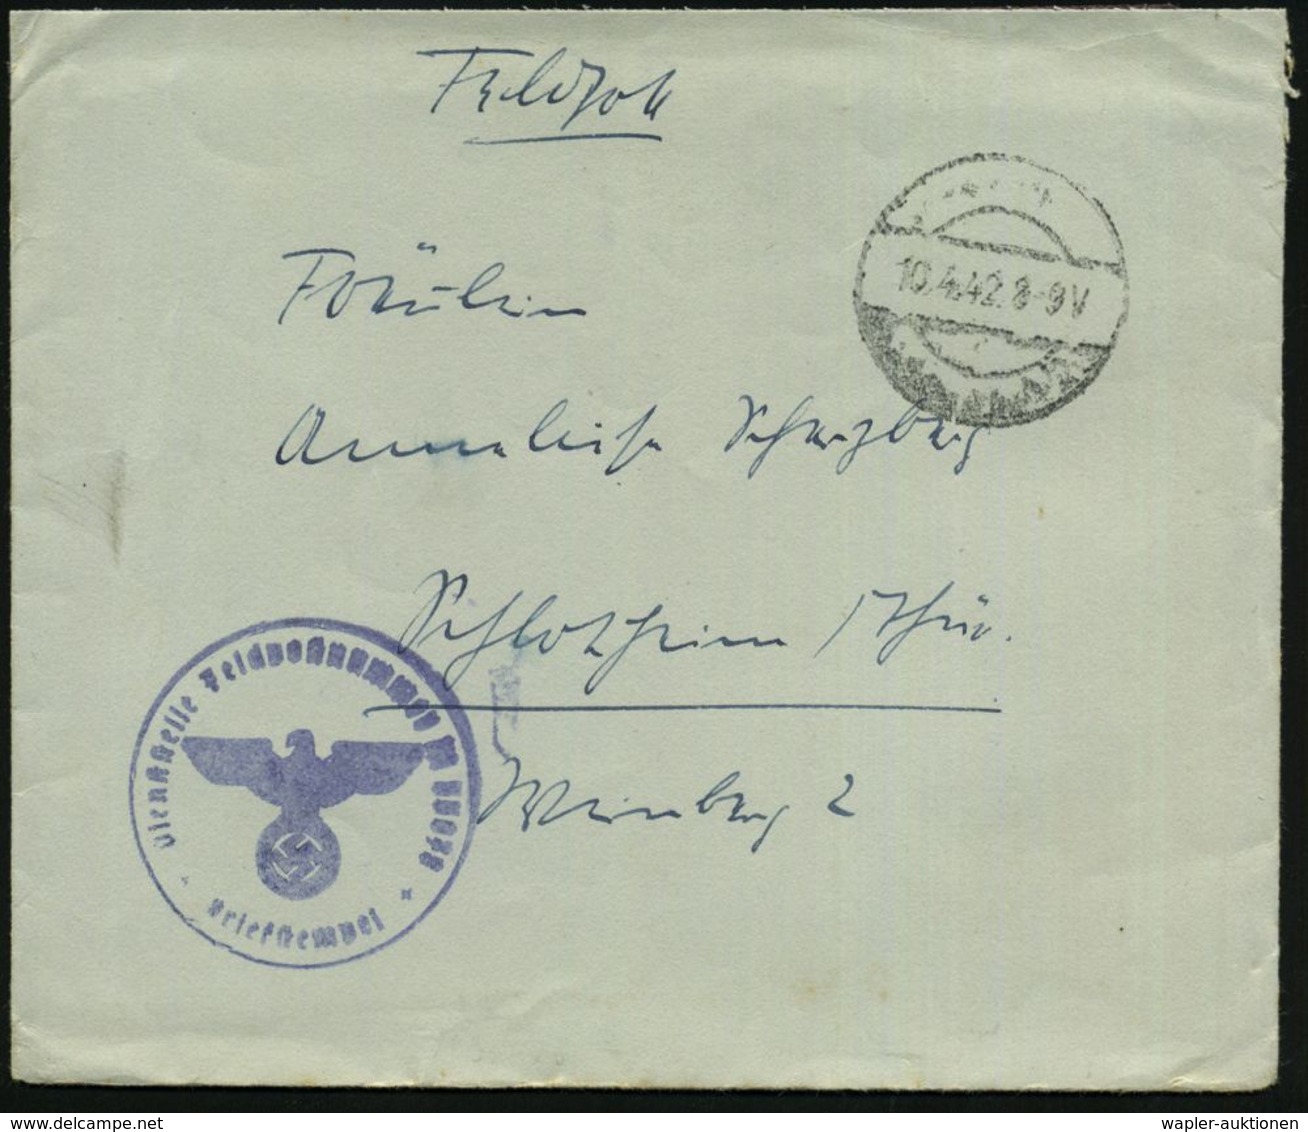 DEUTSCHES REICH 1942 (10.4.) Stummer 1K-Steg = Tarnstempel + Blauer 1K-HdN: Feldpostnr. M 35 078 = Panzerschiff "Lützow" - Maritime